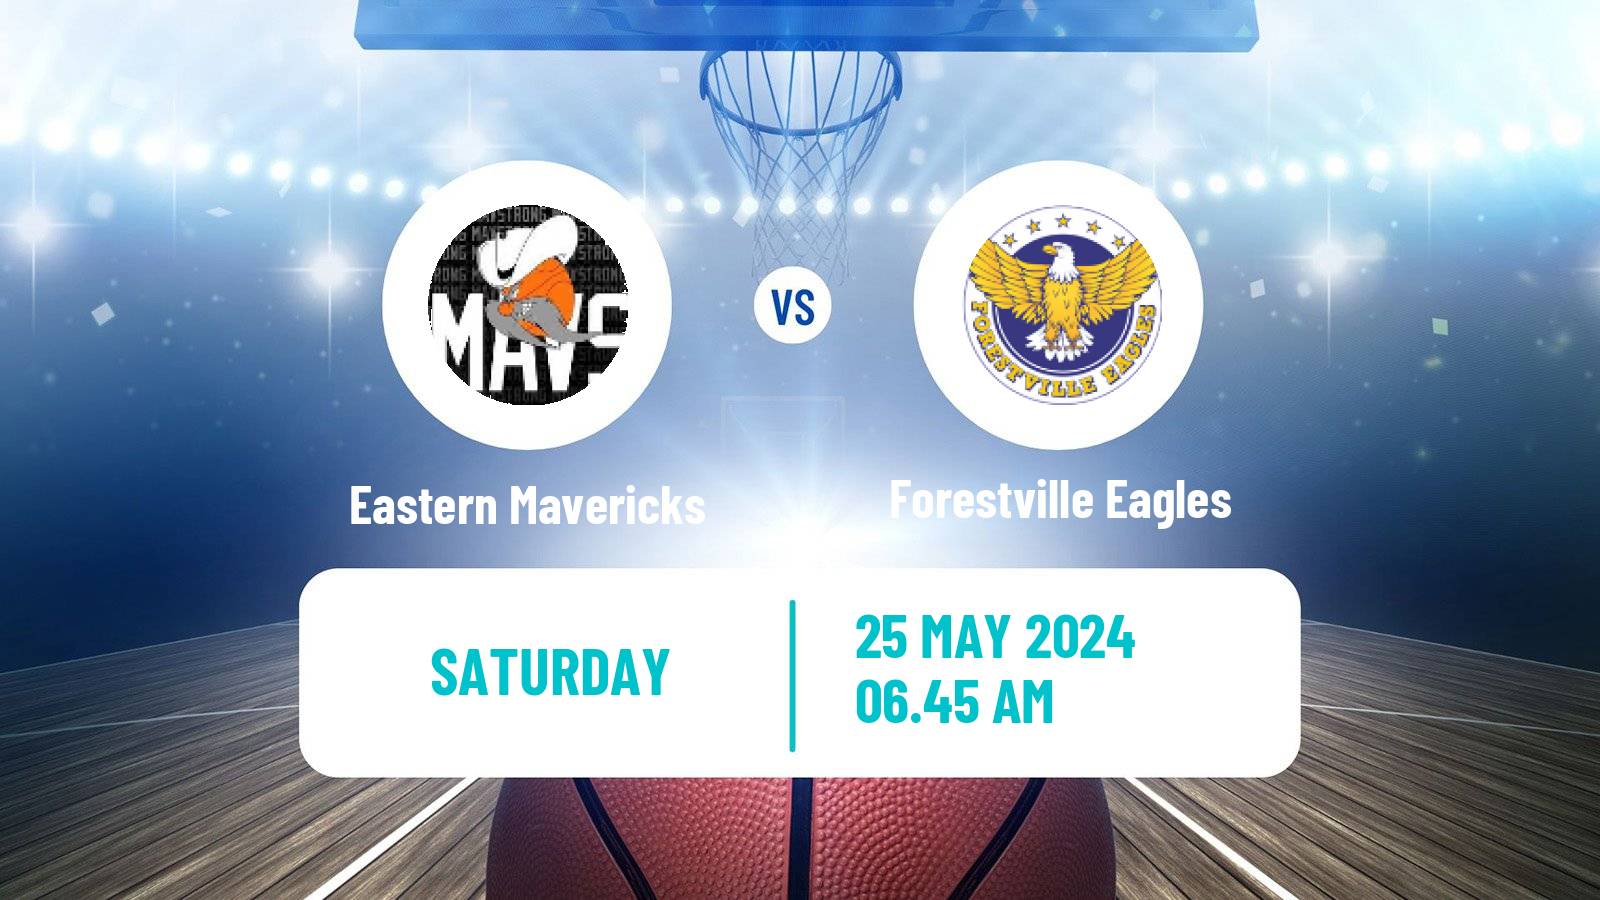 Basketball Australian NBL1 Central Eastern Mavericks - Forestville Eagles